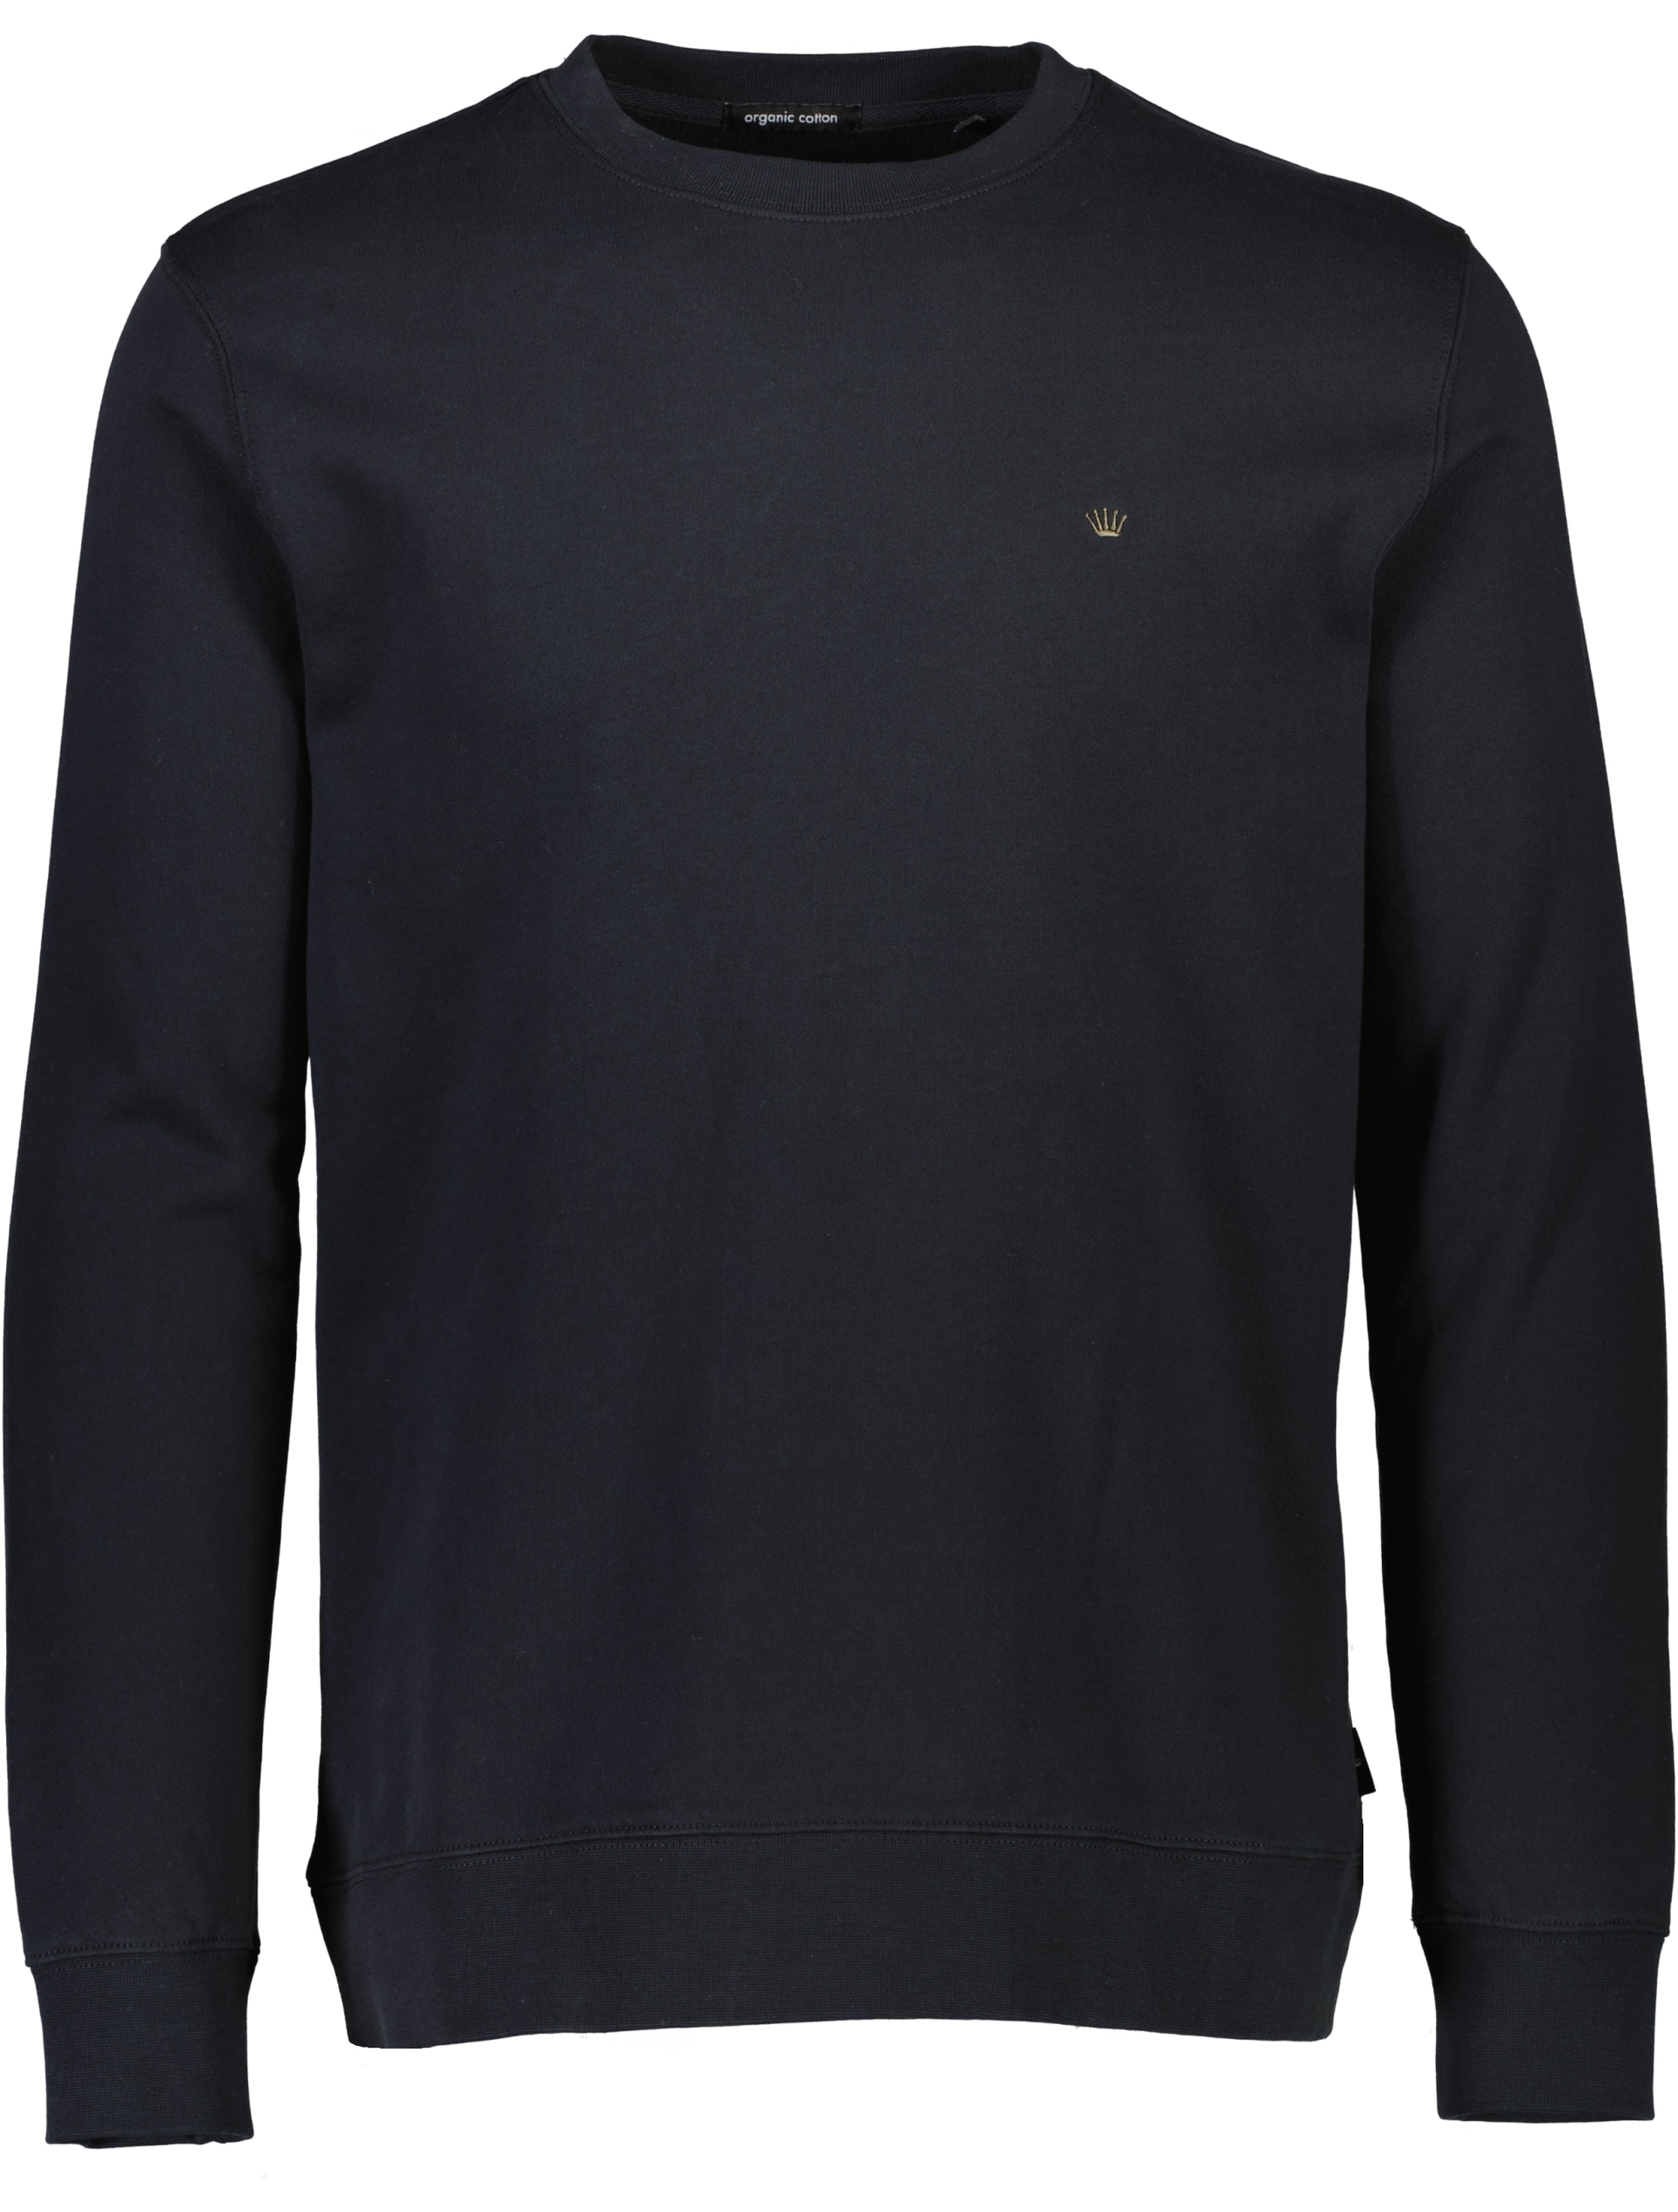 Junk de Luxe Sweatshirt sort / black